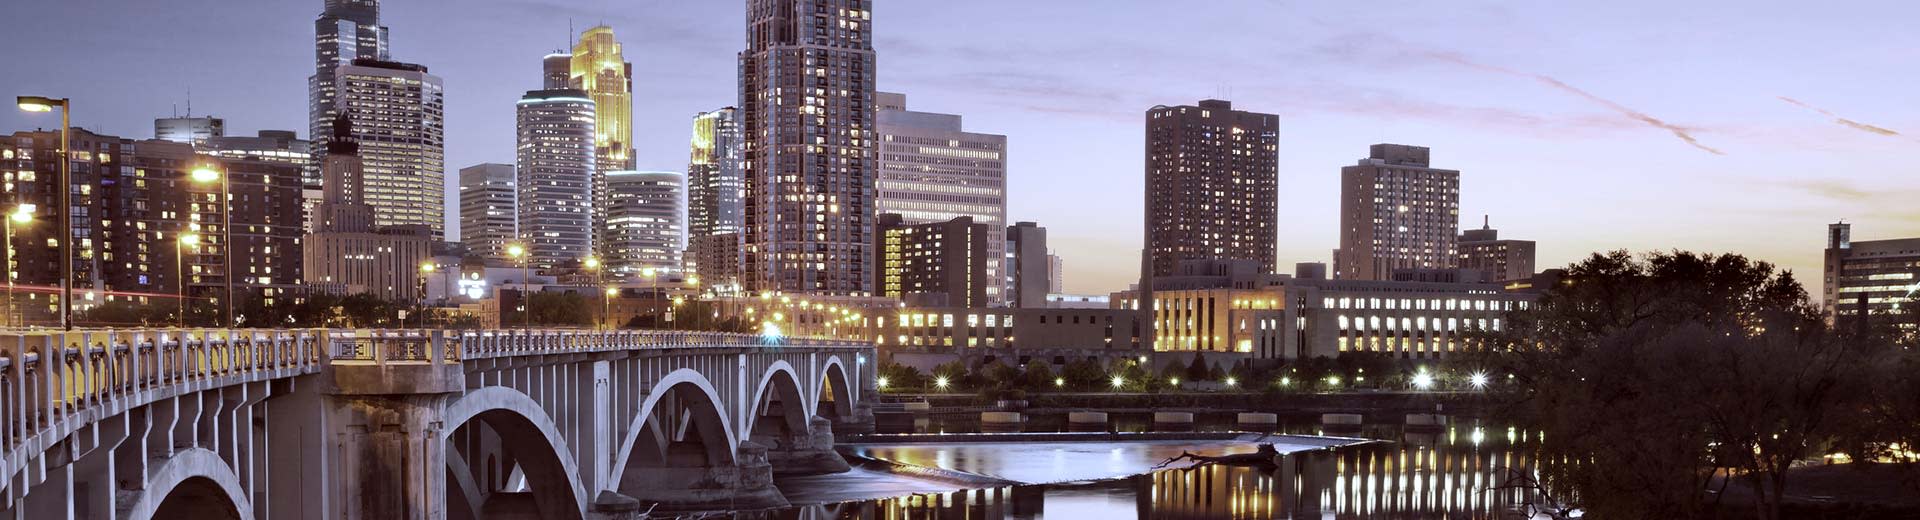 Eine Brücke und Hochhaus-Wolkenkratzer beleuchten den Himmel über Minneapolis.